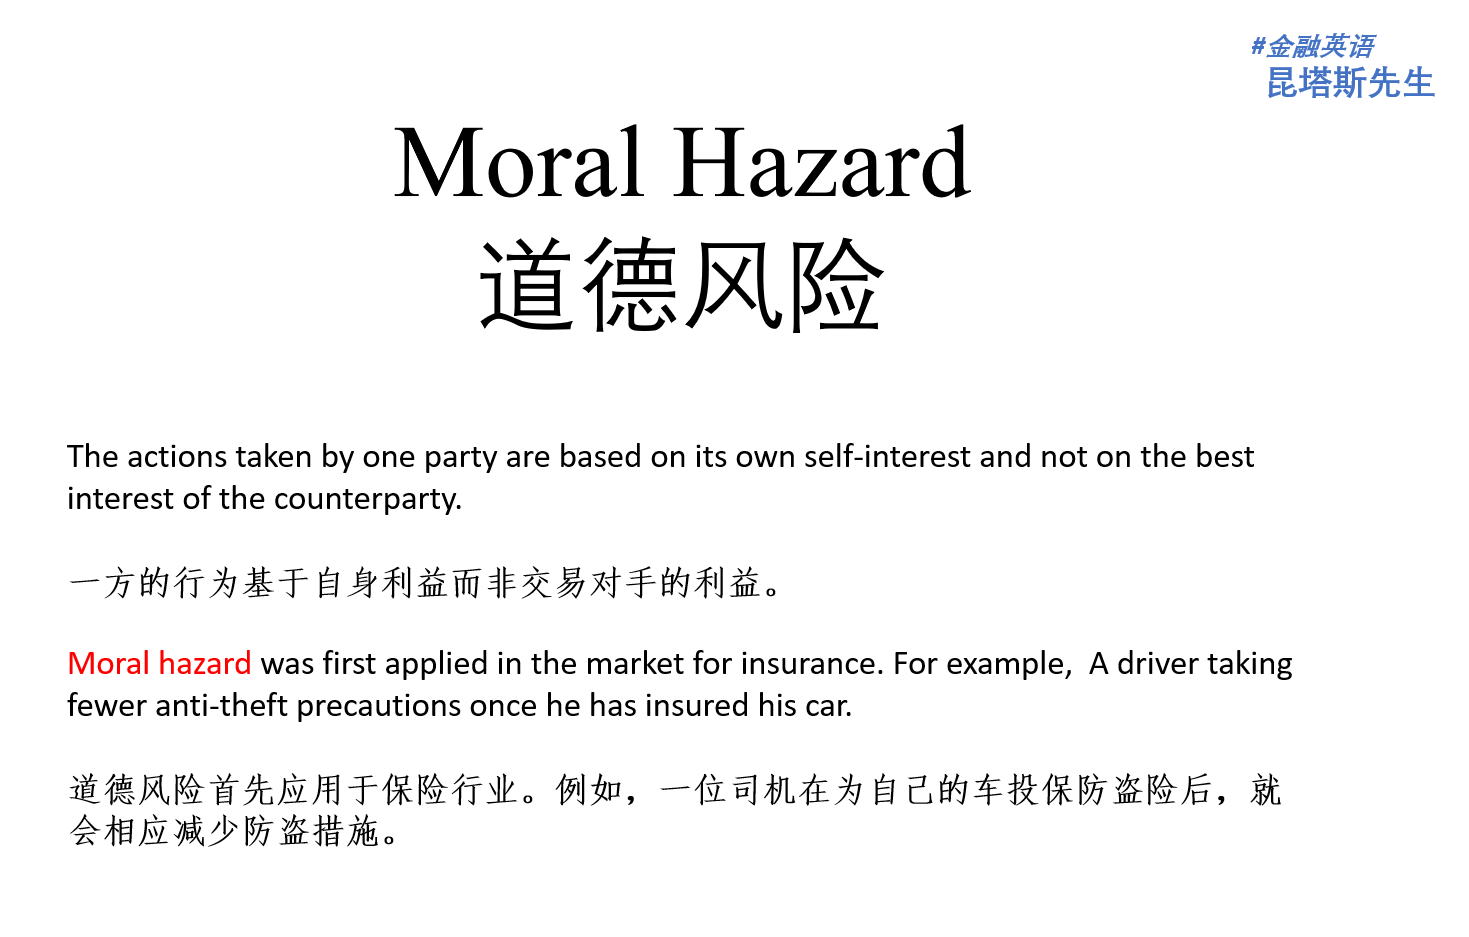 moralhazard,moral hazard